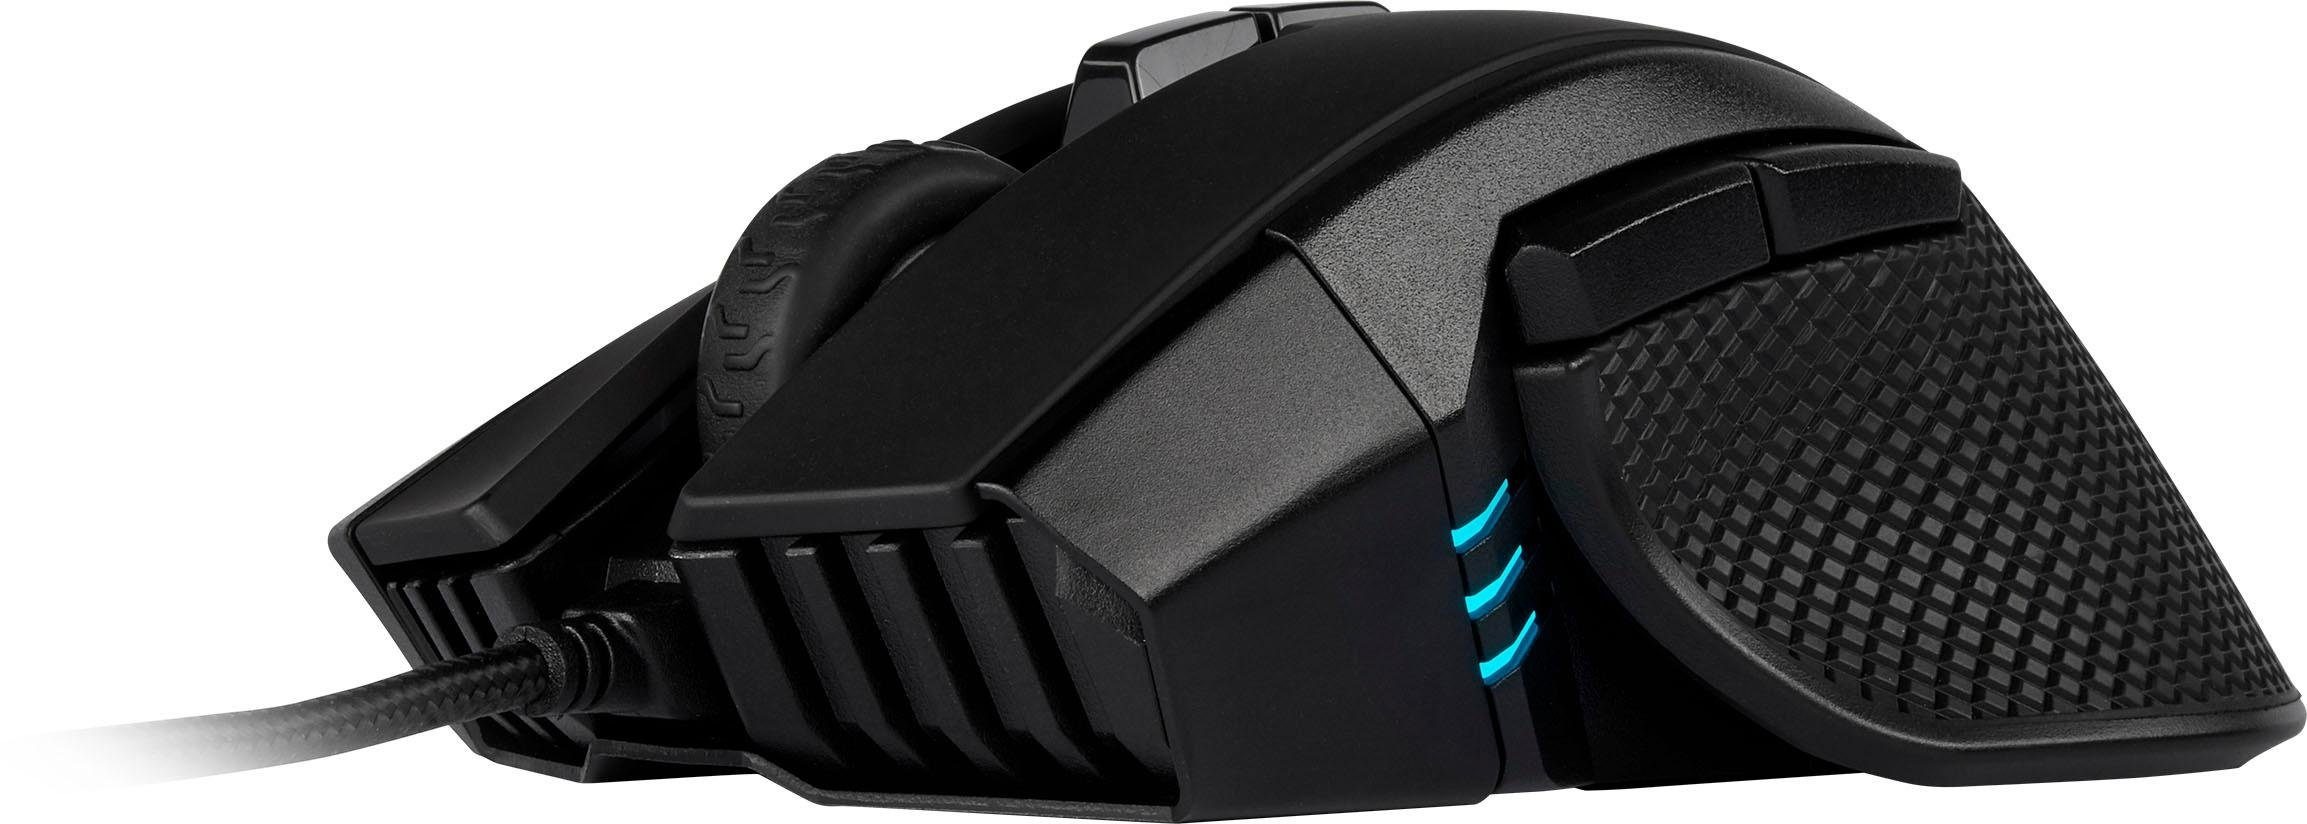 Corsair Gaming-Maus »IRONCLAW RGB«, kabelgebunden